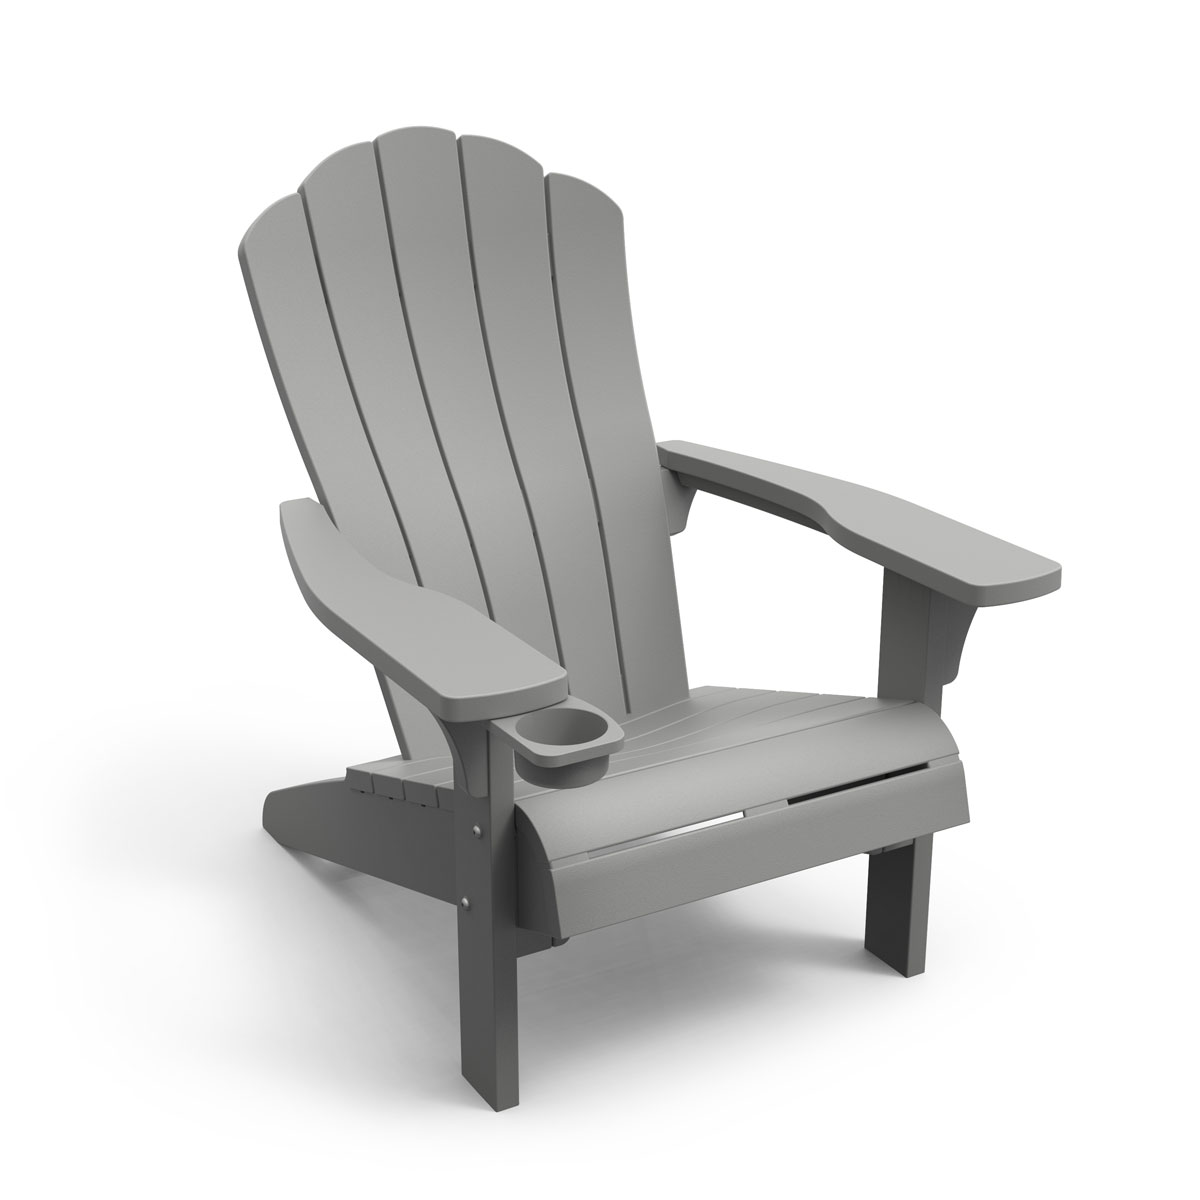 ととのい 椅子 ガーデンチェア 組立必要 「ケター エベレスト アディロンダックチェア （KETER Everest Adirondack Chair）」